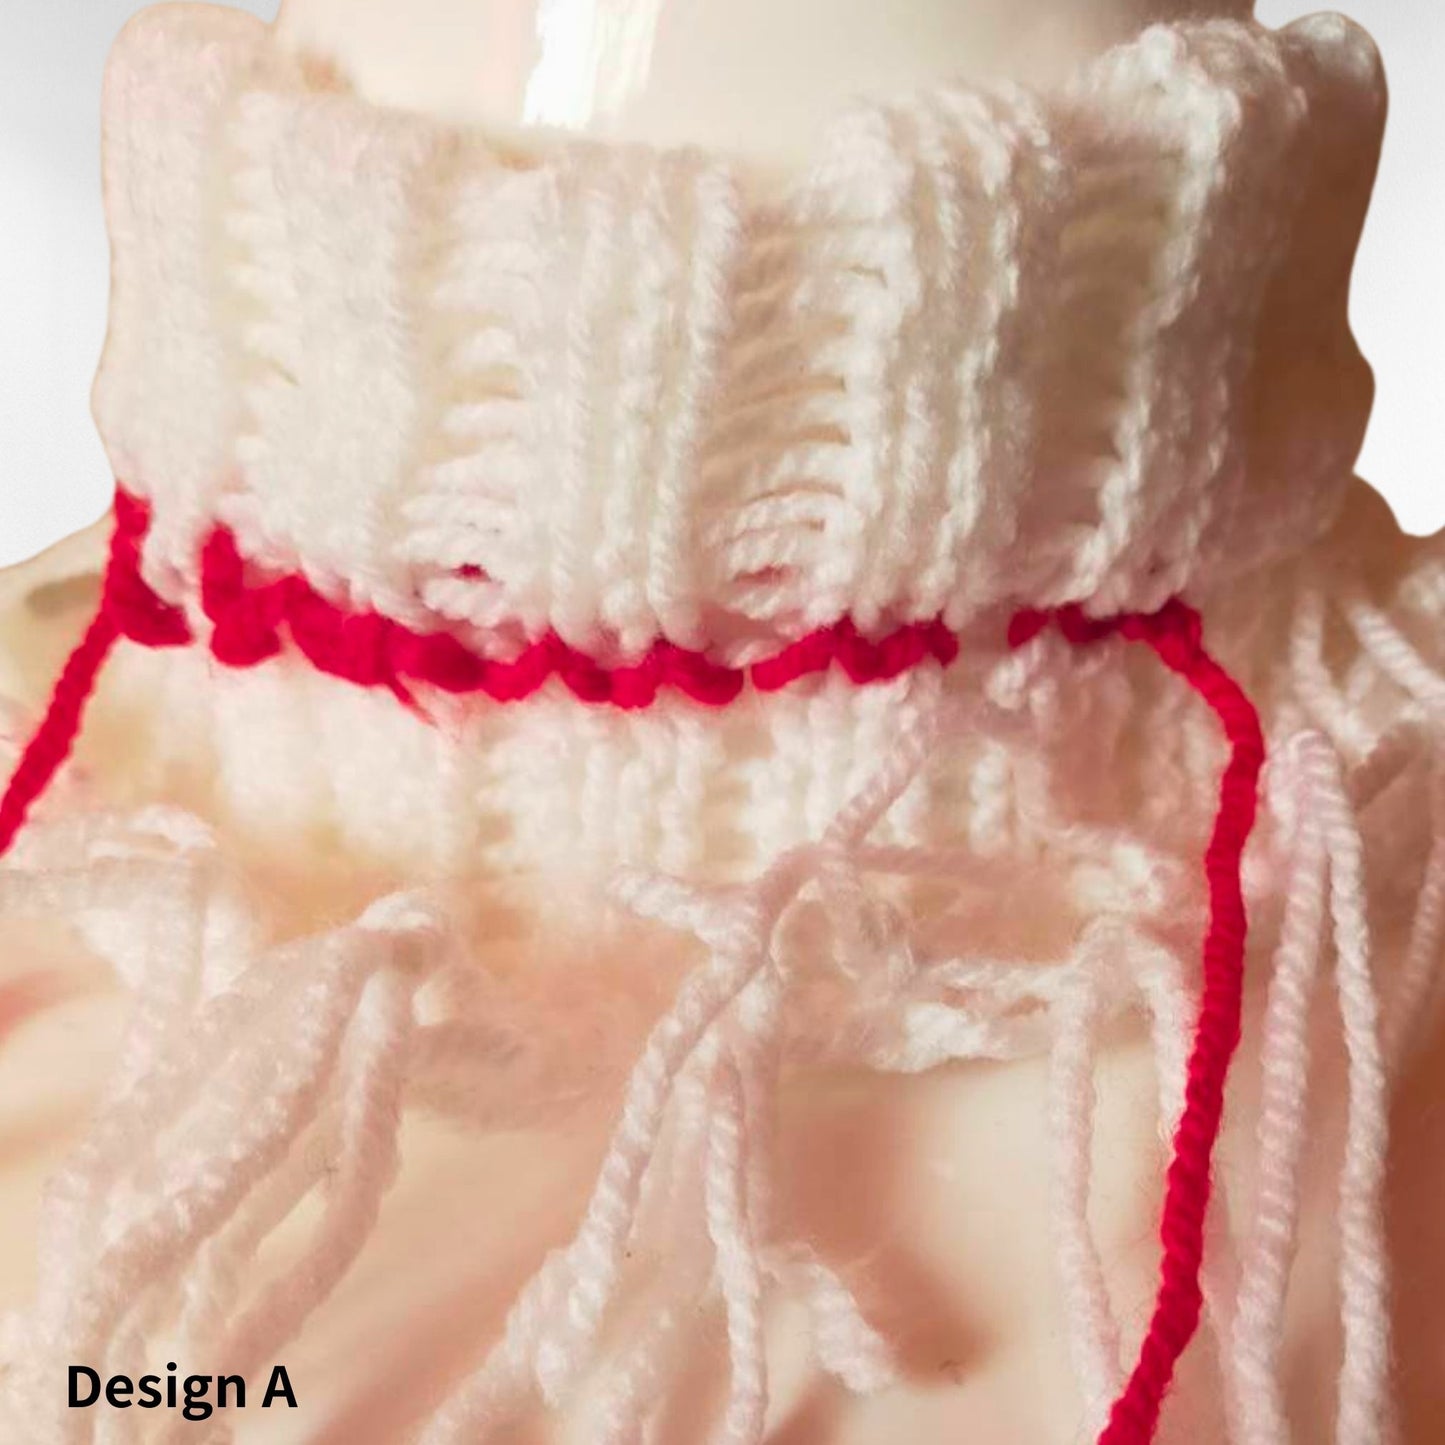 Red Drip " Handgefertigtes gestricktes Halsband-Halsaccessoire in weißem und rotem Design